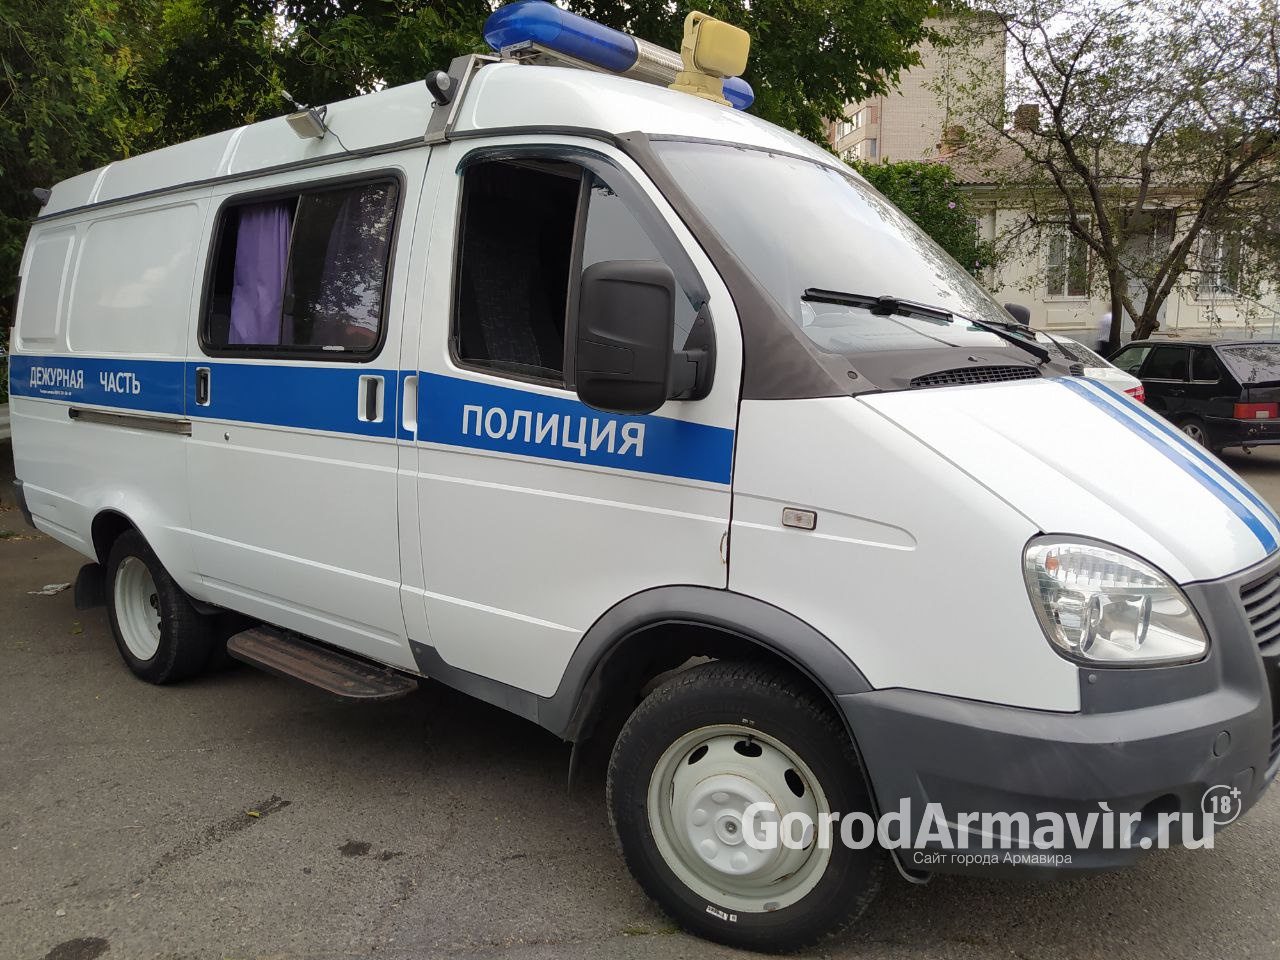 Полицейские Армавира задержали обманувших горожан на 110 тысяч руб лжесотрудников Роспотребнадзора